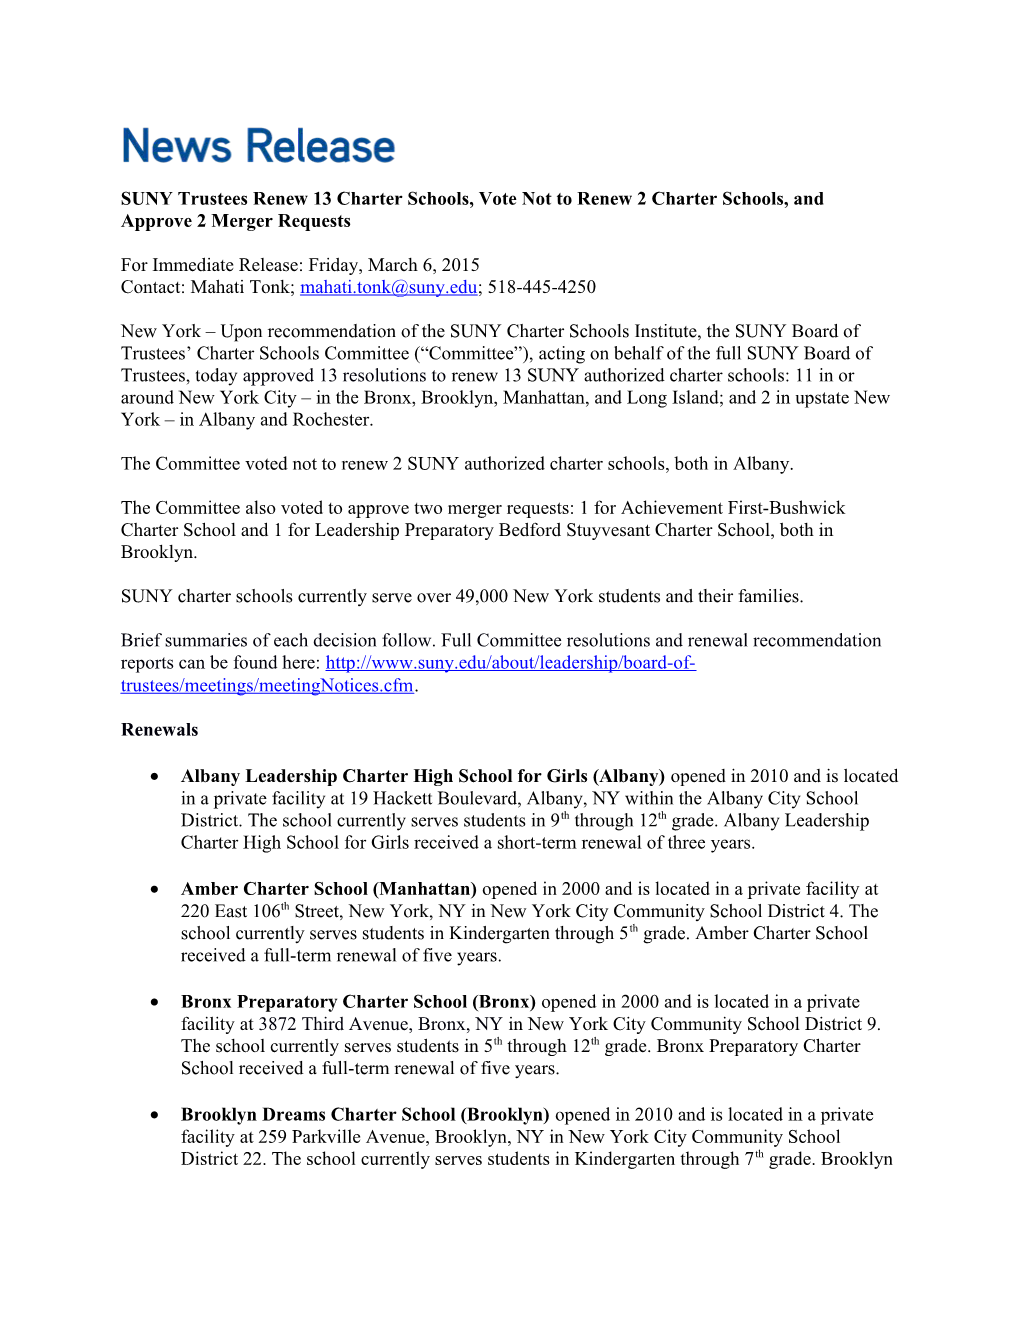 SUNY Trustees Renew 13 Charter Schools, Vote Not to Renew 2 Charter Schools, and Approve